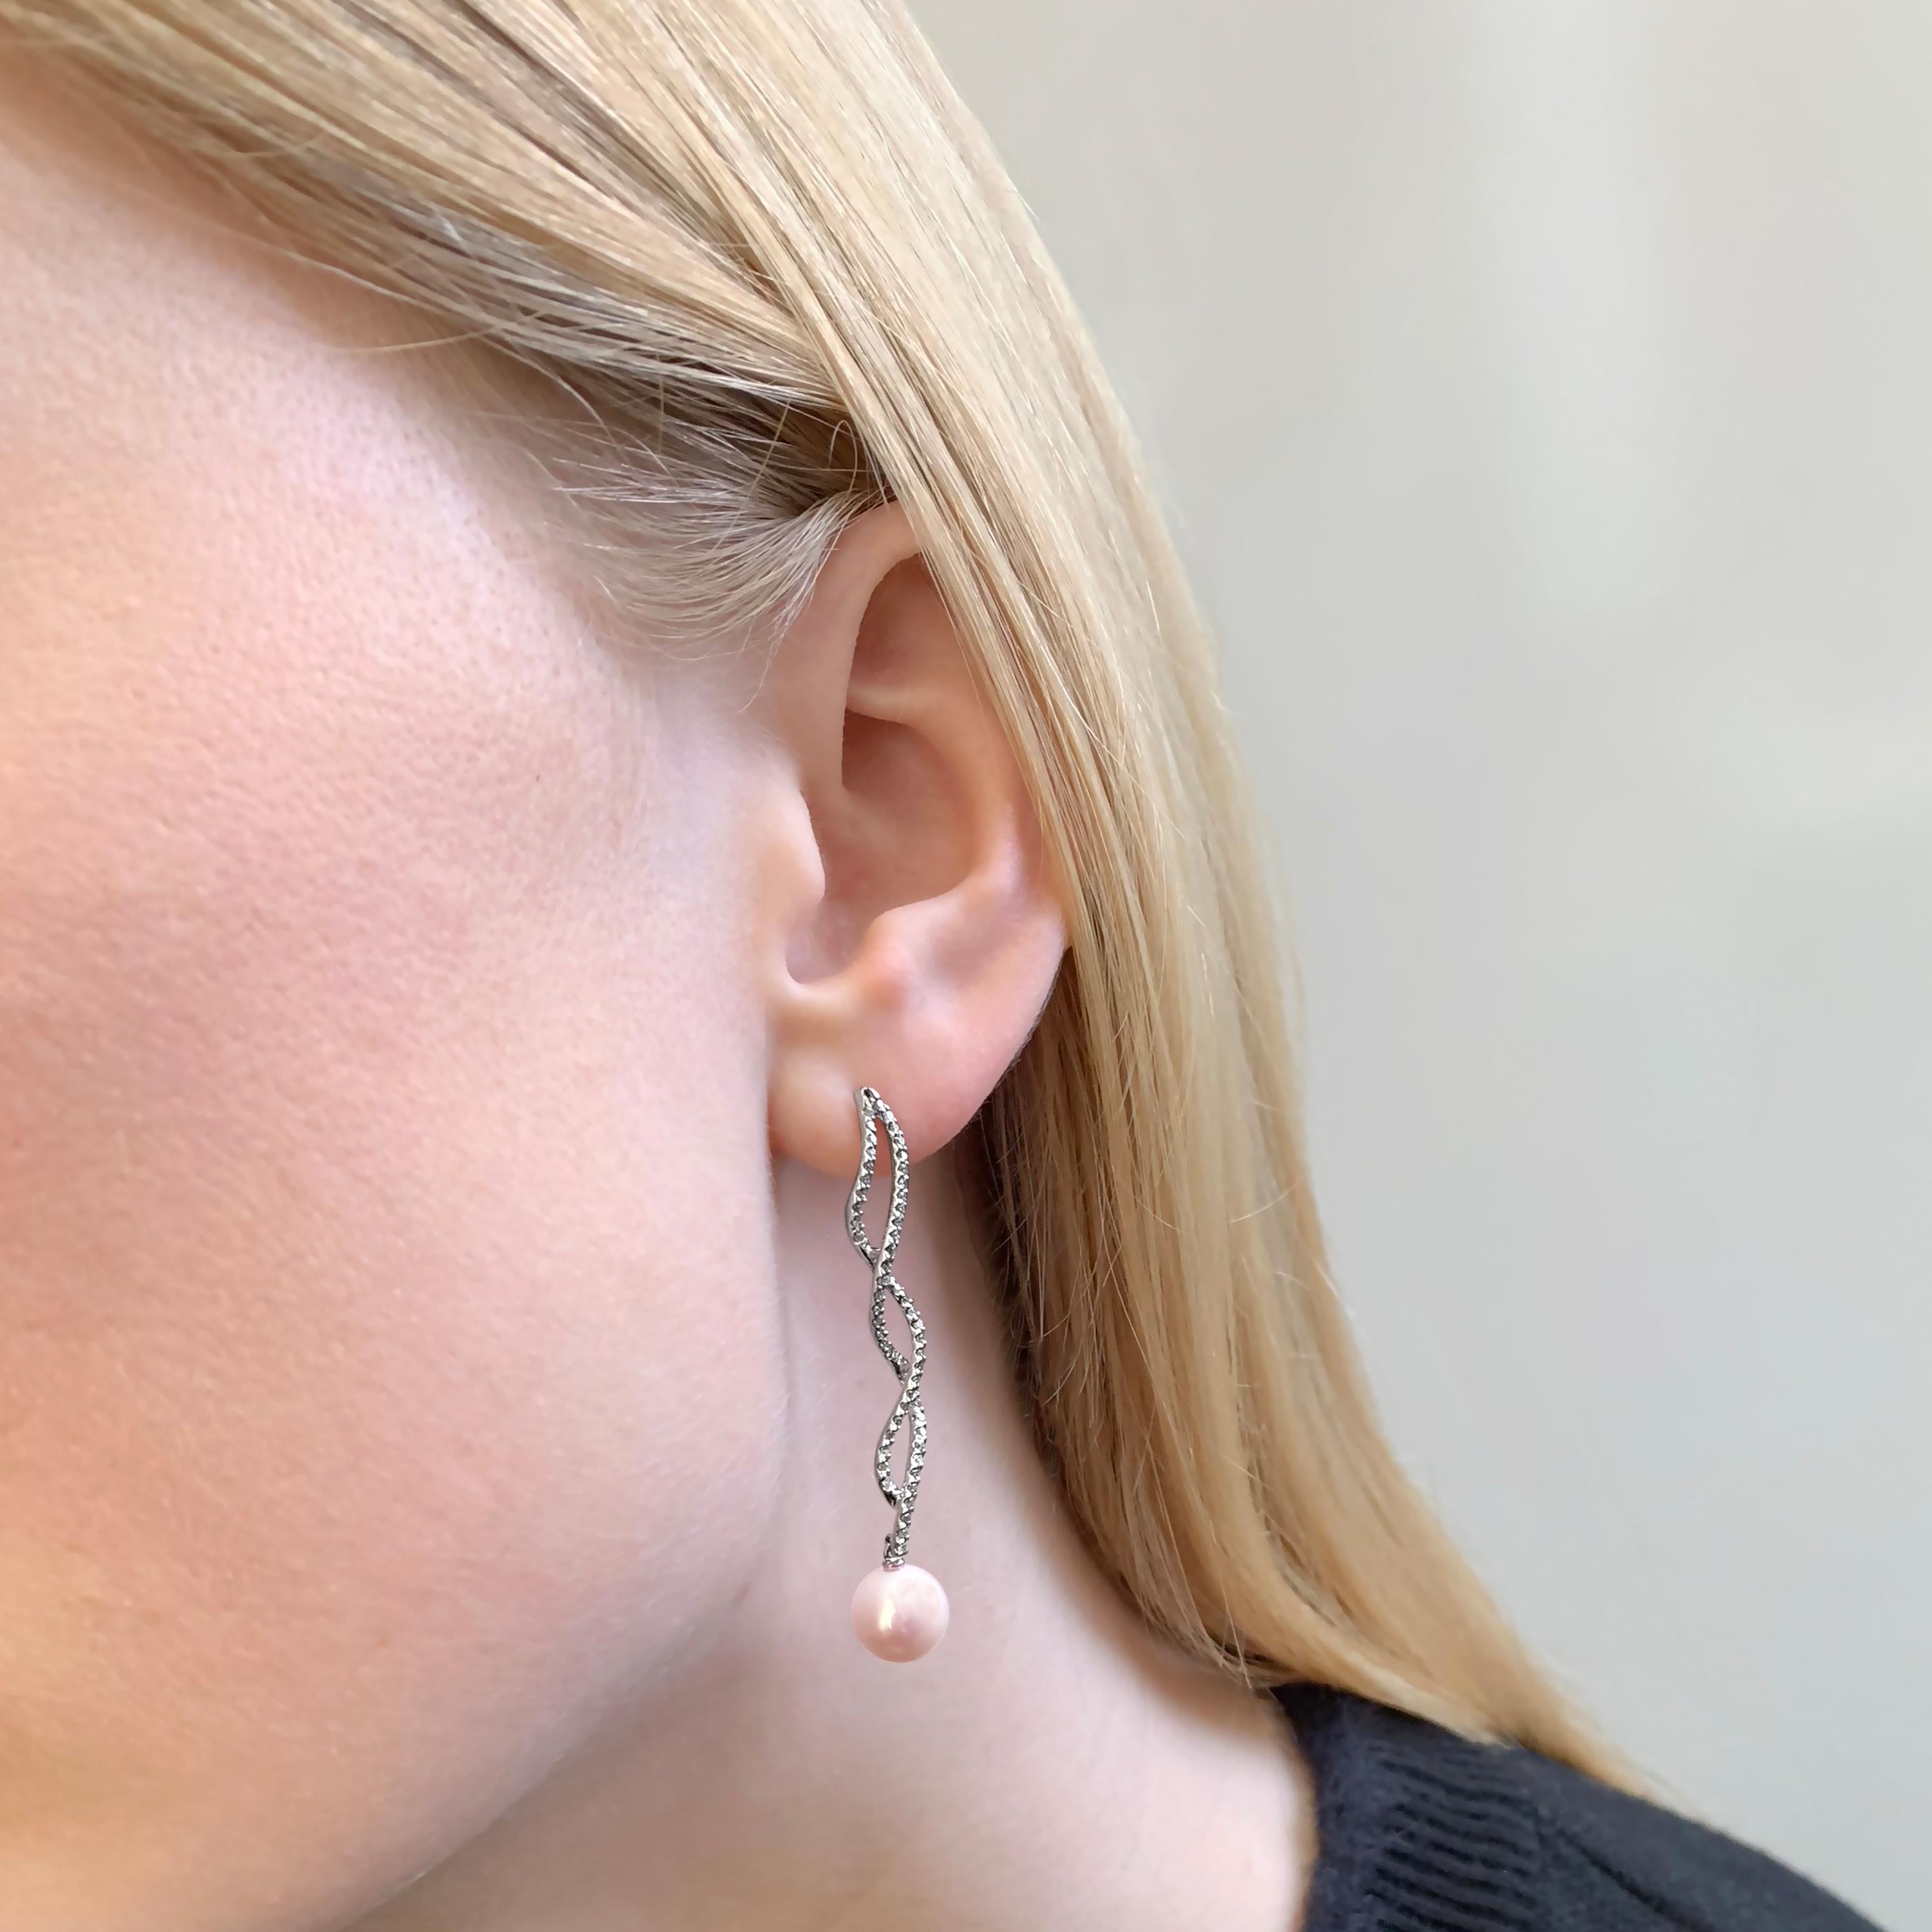 Diese eleganten Ohrringe von Yoko London bestehen aus Süßwasserperlen, die von einem zarten Diamantenbesatz umgeben sind. Die Fassung aus 18 Karat Weißgold bringt den Glanz der Perle und das helle Funkeln der Diamanten perfekt zur Geltung. Die Länge